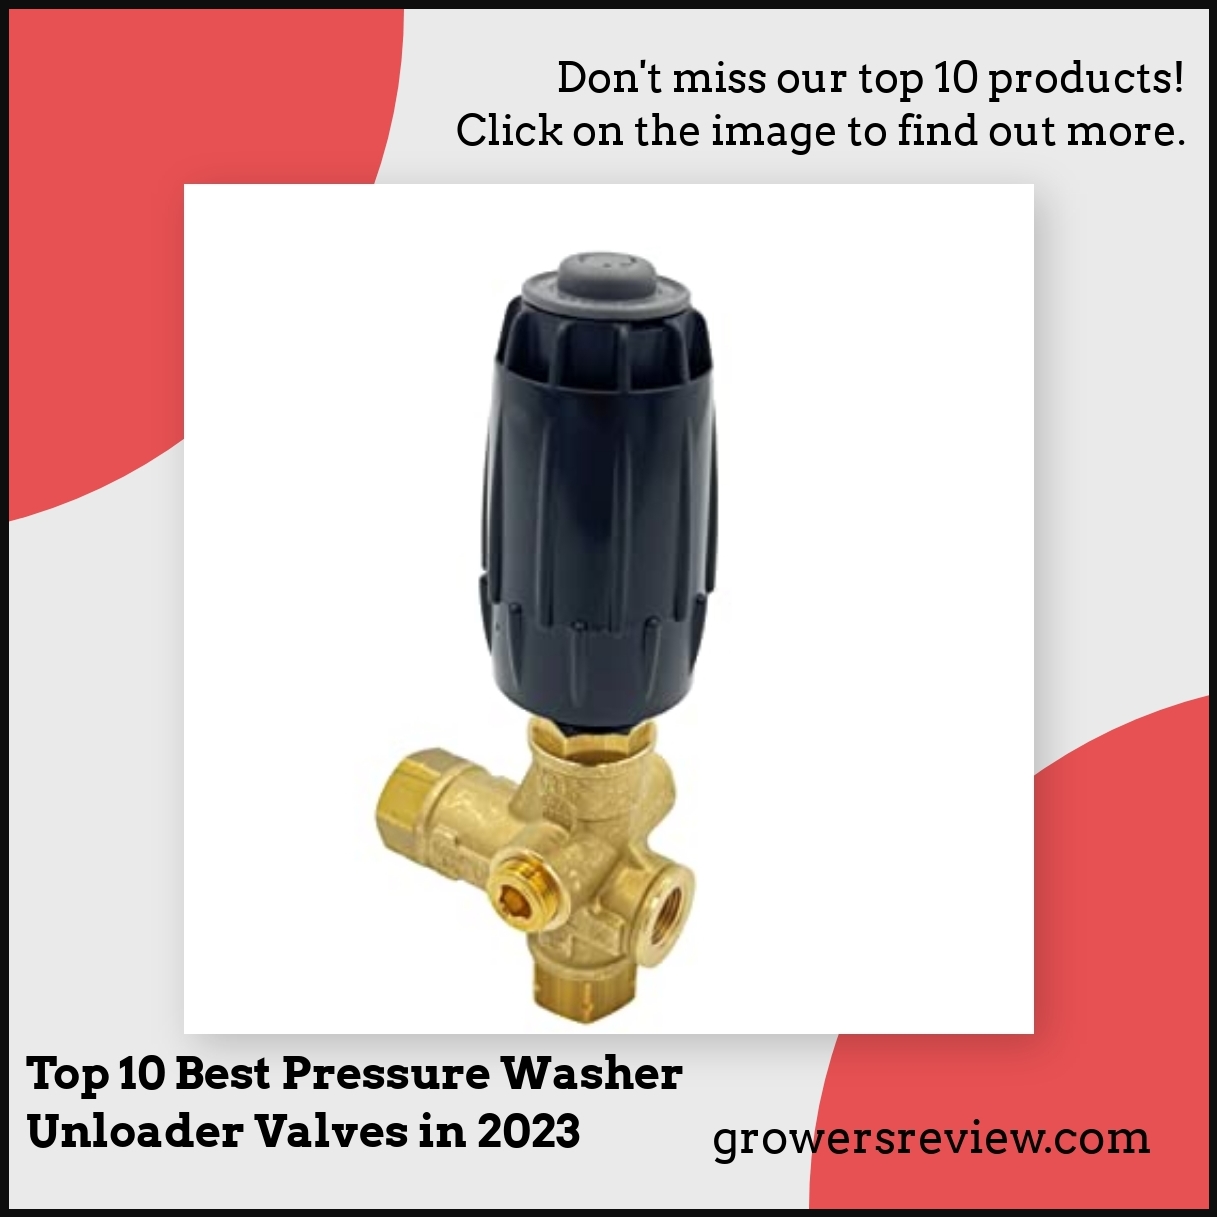 Top 10 Best Pressure Washer Unloader Valves in 2023